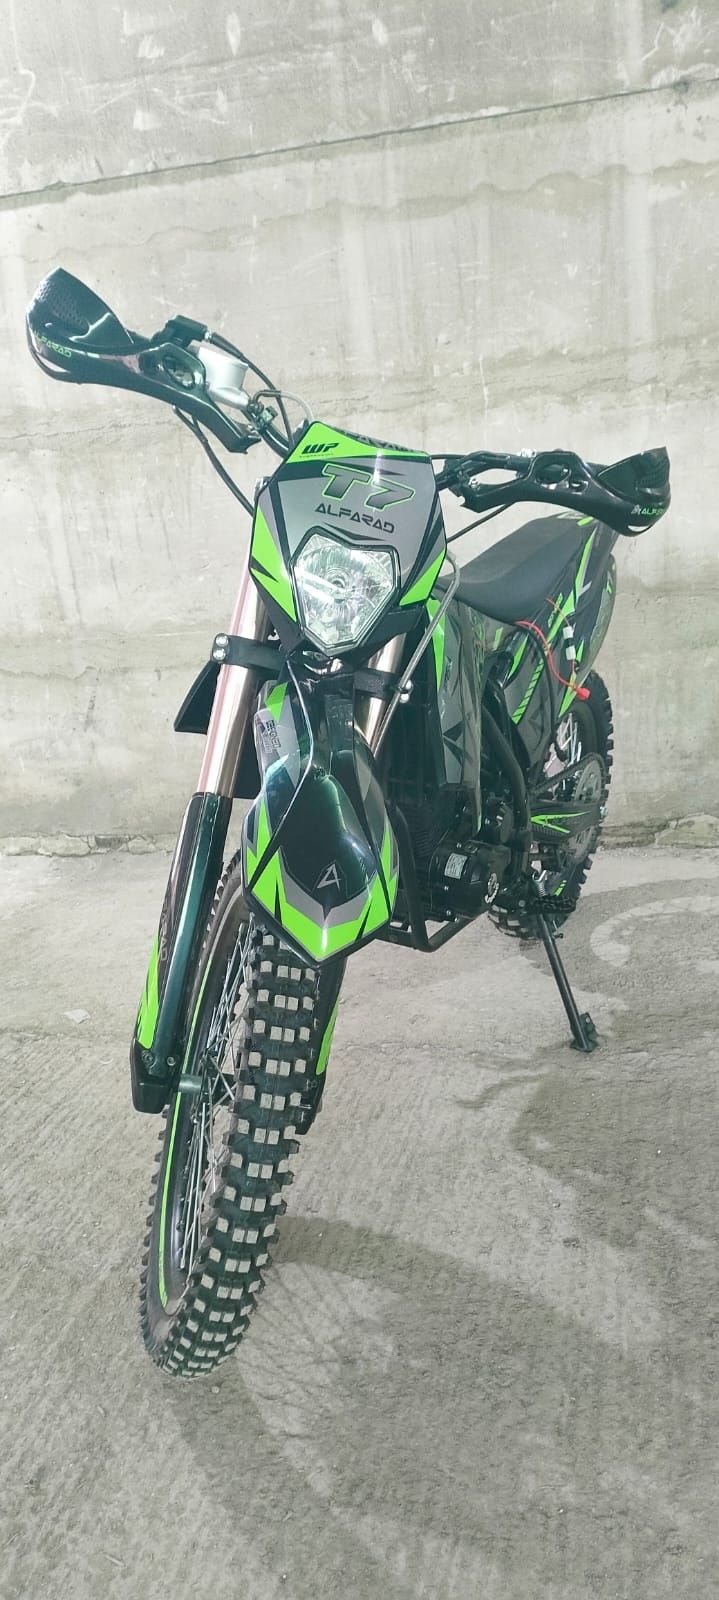 Alfara 250cc nou cu garanție și livrare în toată țara pentru adulți